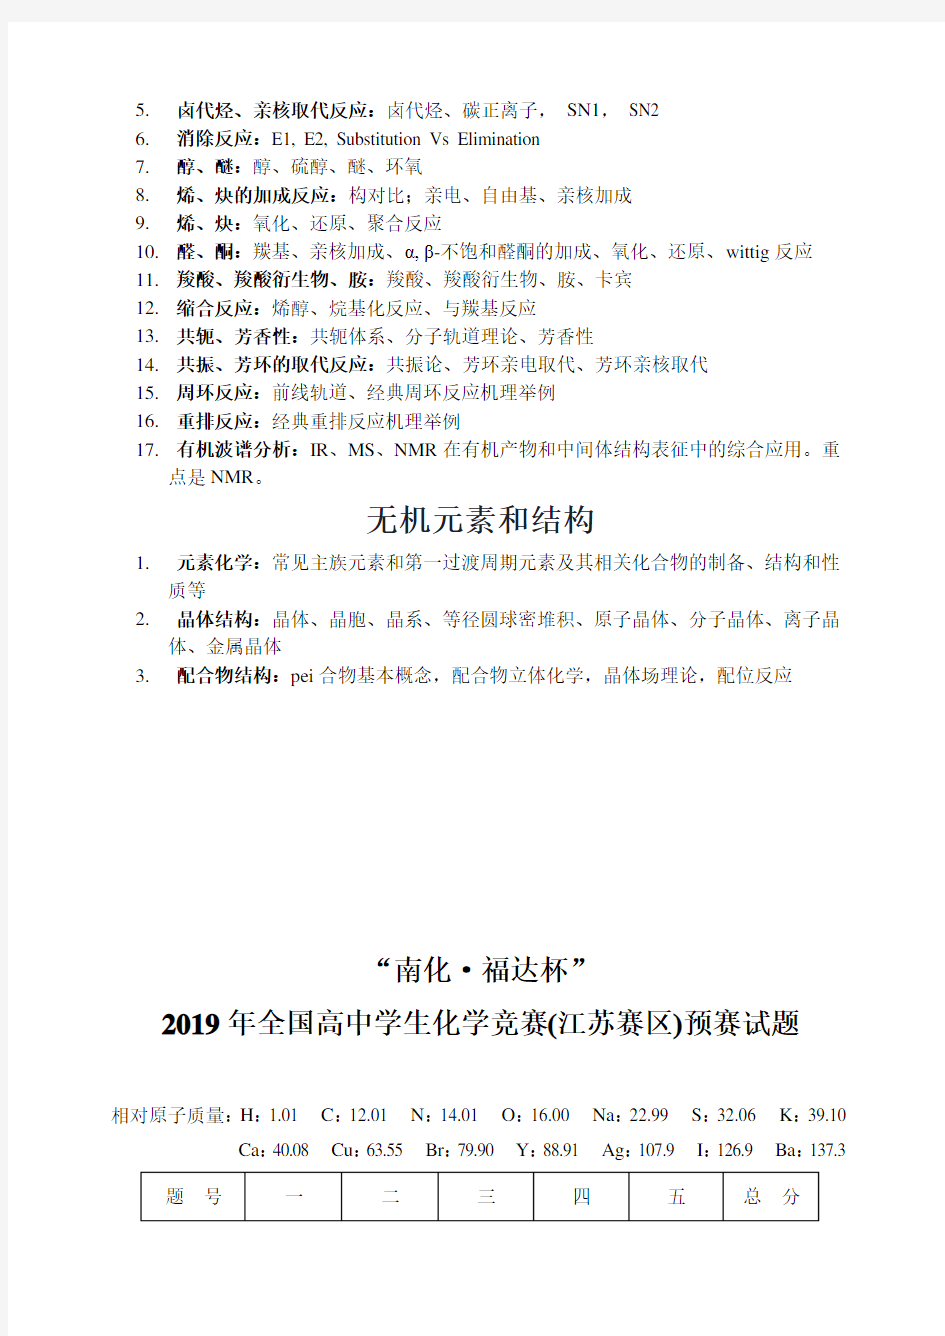 2019年全国高中学生化学竞赛(江苏赛区)预赛试题含详细答案及指导